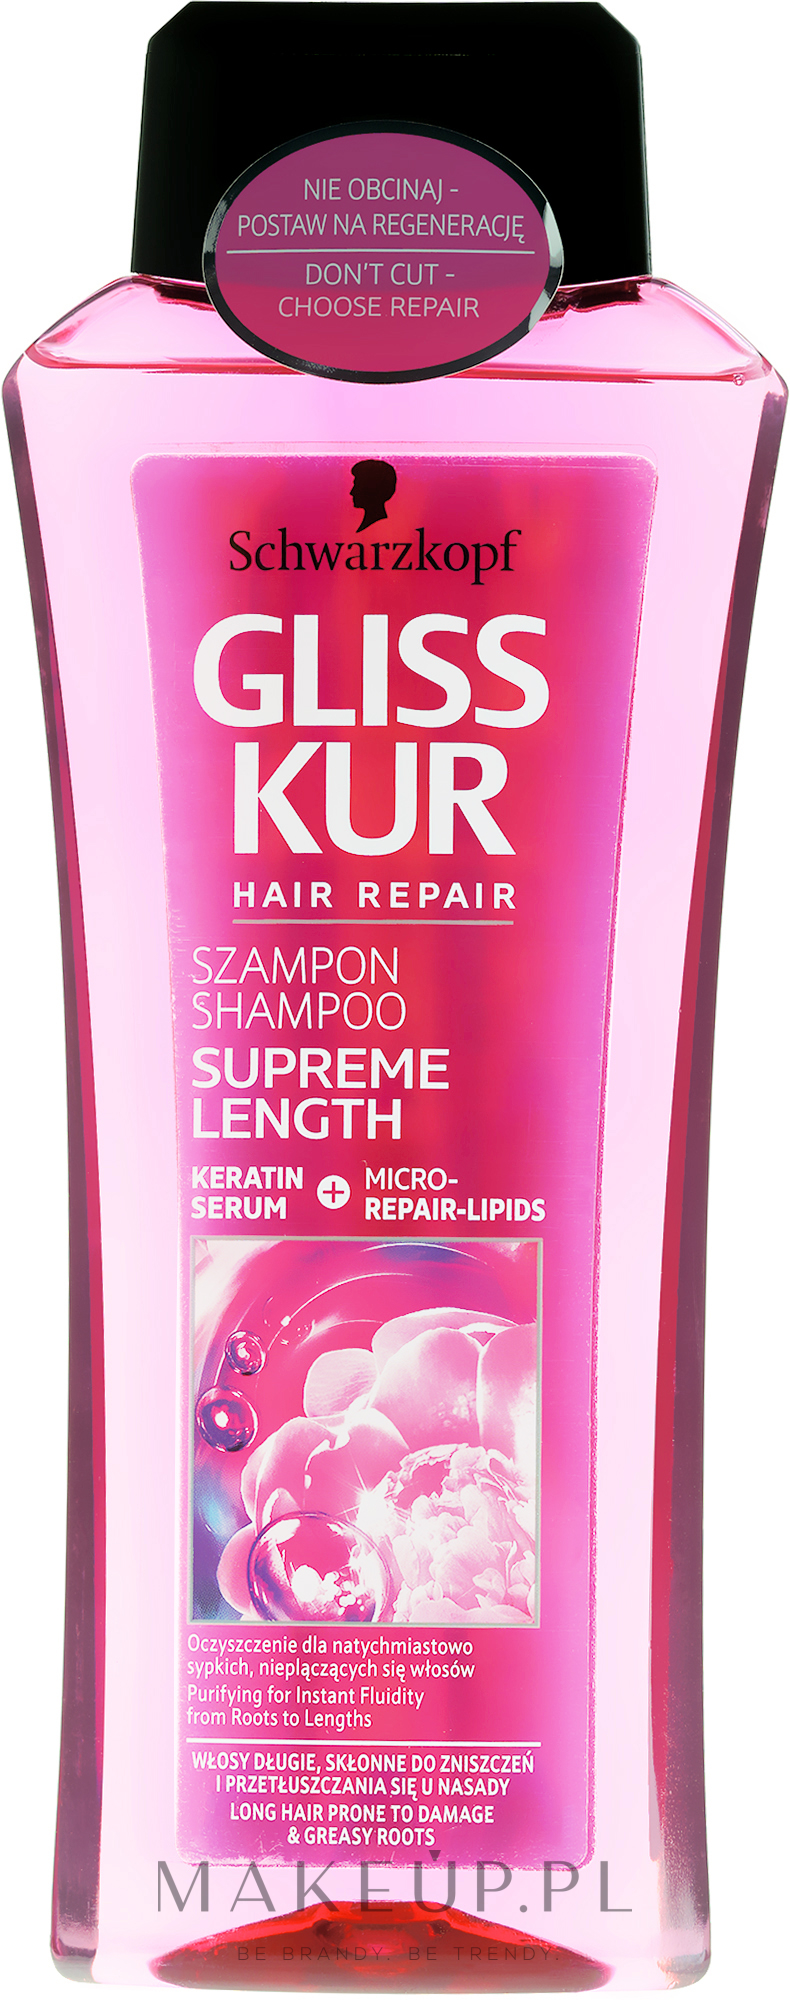 Wzmacniający szampon do włosów długich, skłonnych do zniszczeń i przetłuszczania się u nasady - Gliss Kur Supreme Length Shampoo — Zdjęcie 250 ml